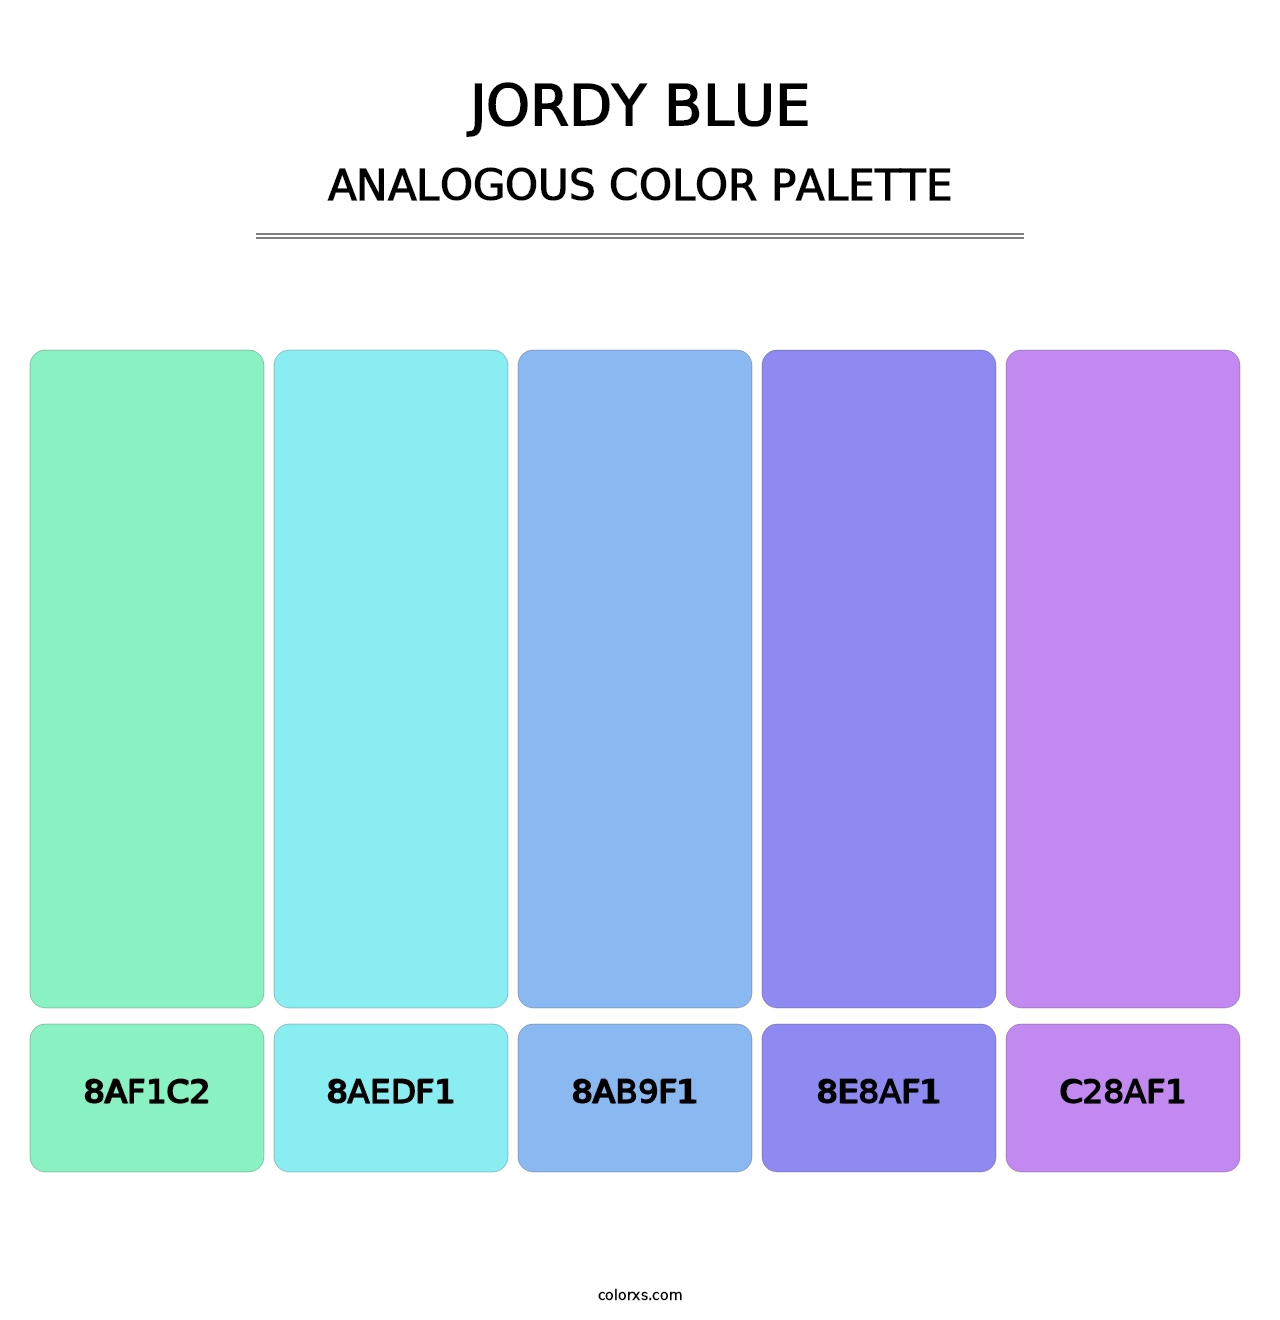 Jordy Blue - Analogous Color Palette